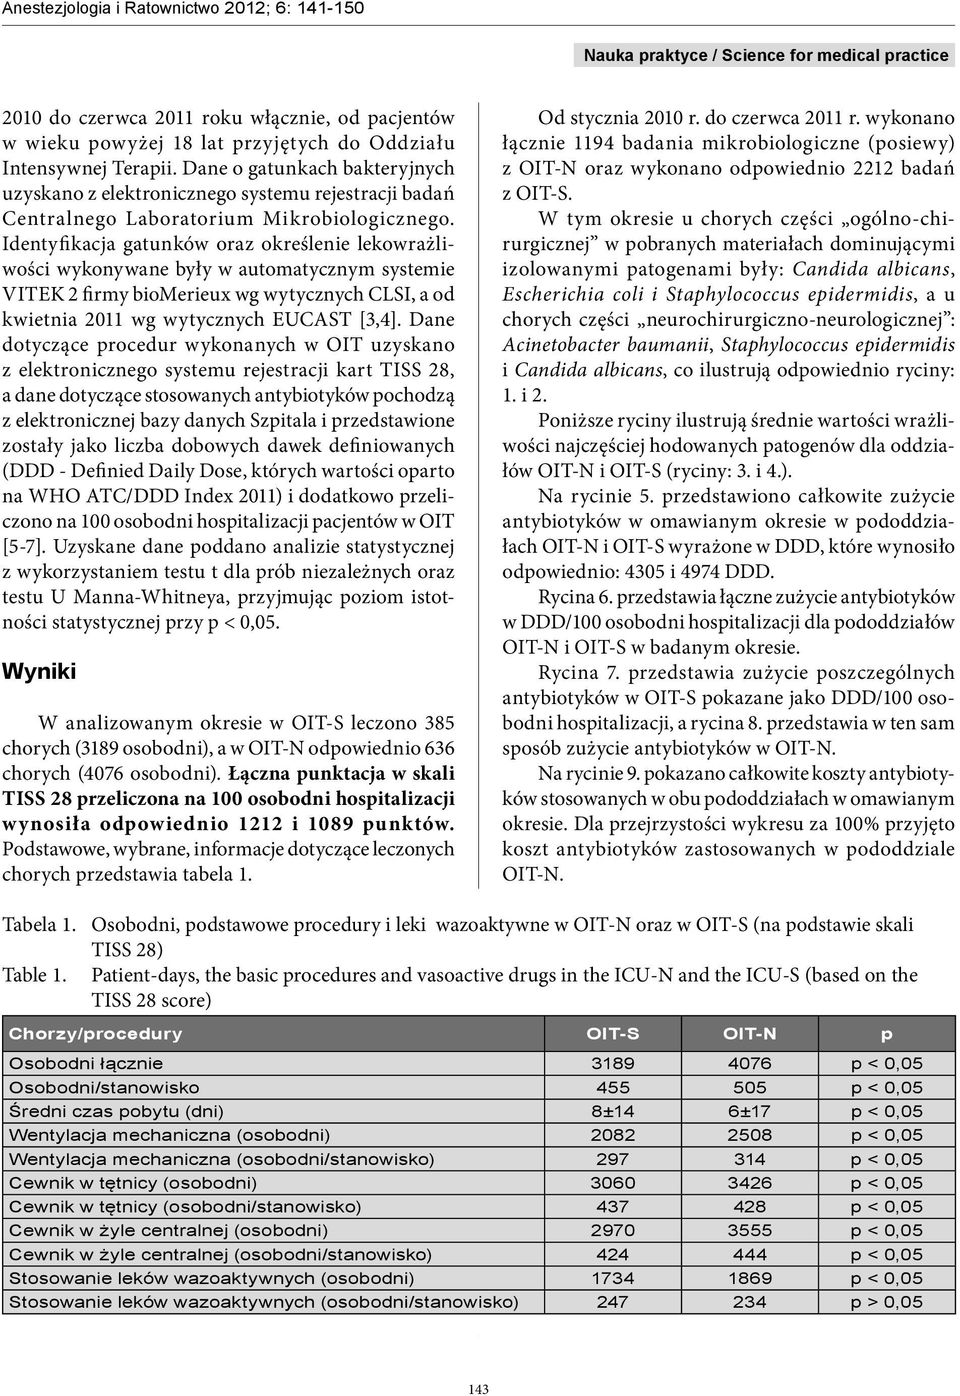 Identyfikacja gatunków oraz określenie lekowrażliwości wykonywane były w automatycznym systemie VITEK 2 firmy biomerieux wg wytycznych CLSI, a od kwietnia 2011 wg wytycznych EUCAST [3,4].